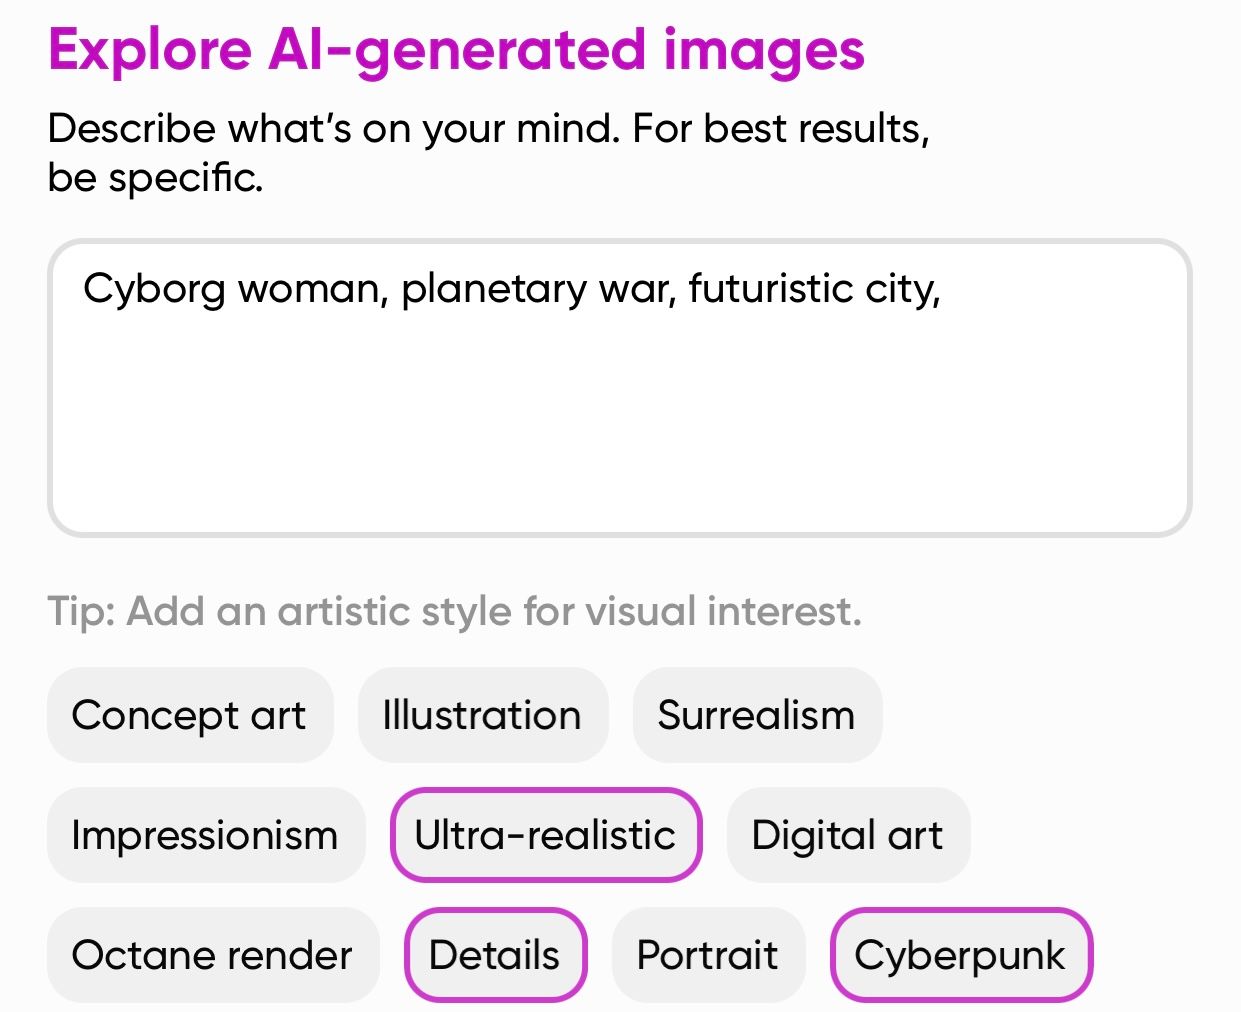 Teks yang berbunyi: Wanita cyborg, perang planet, kota futuristik, dalam kotak teks untuk gambar yang dihasilkan AI